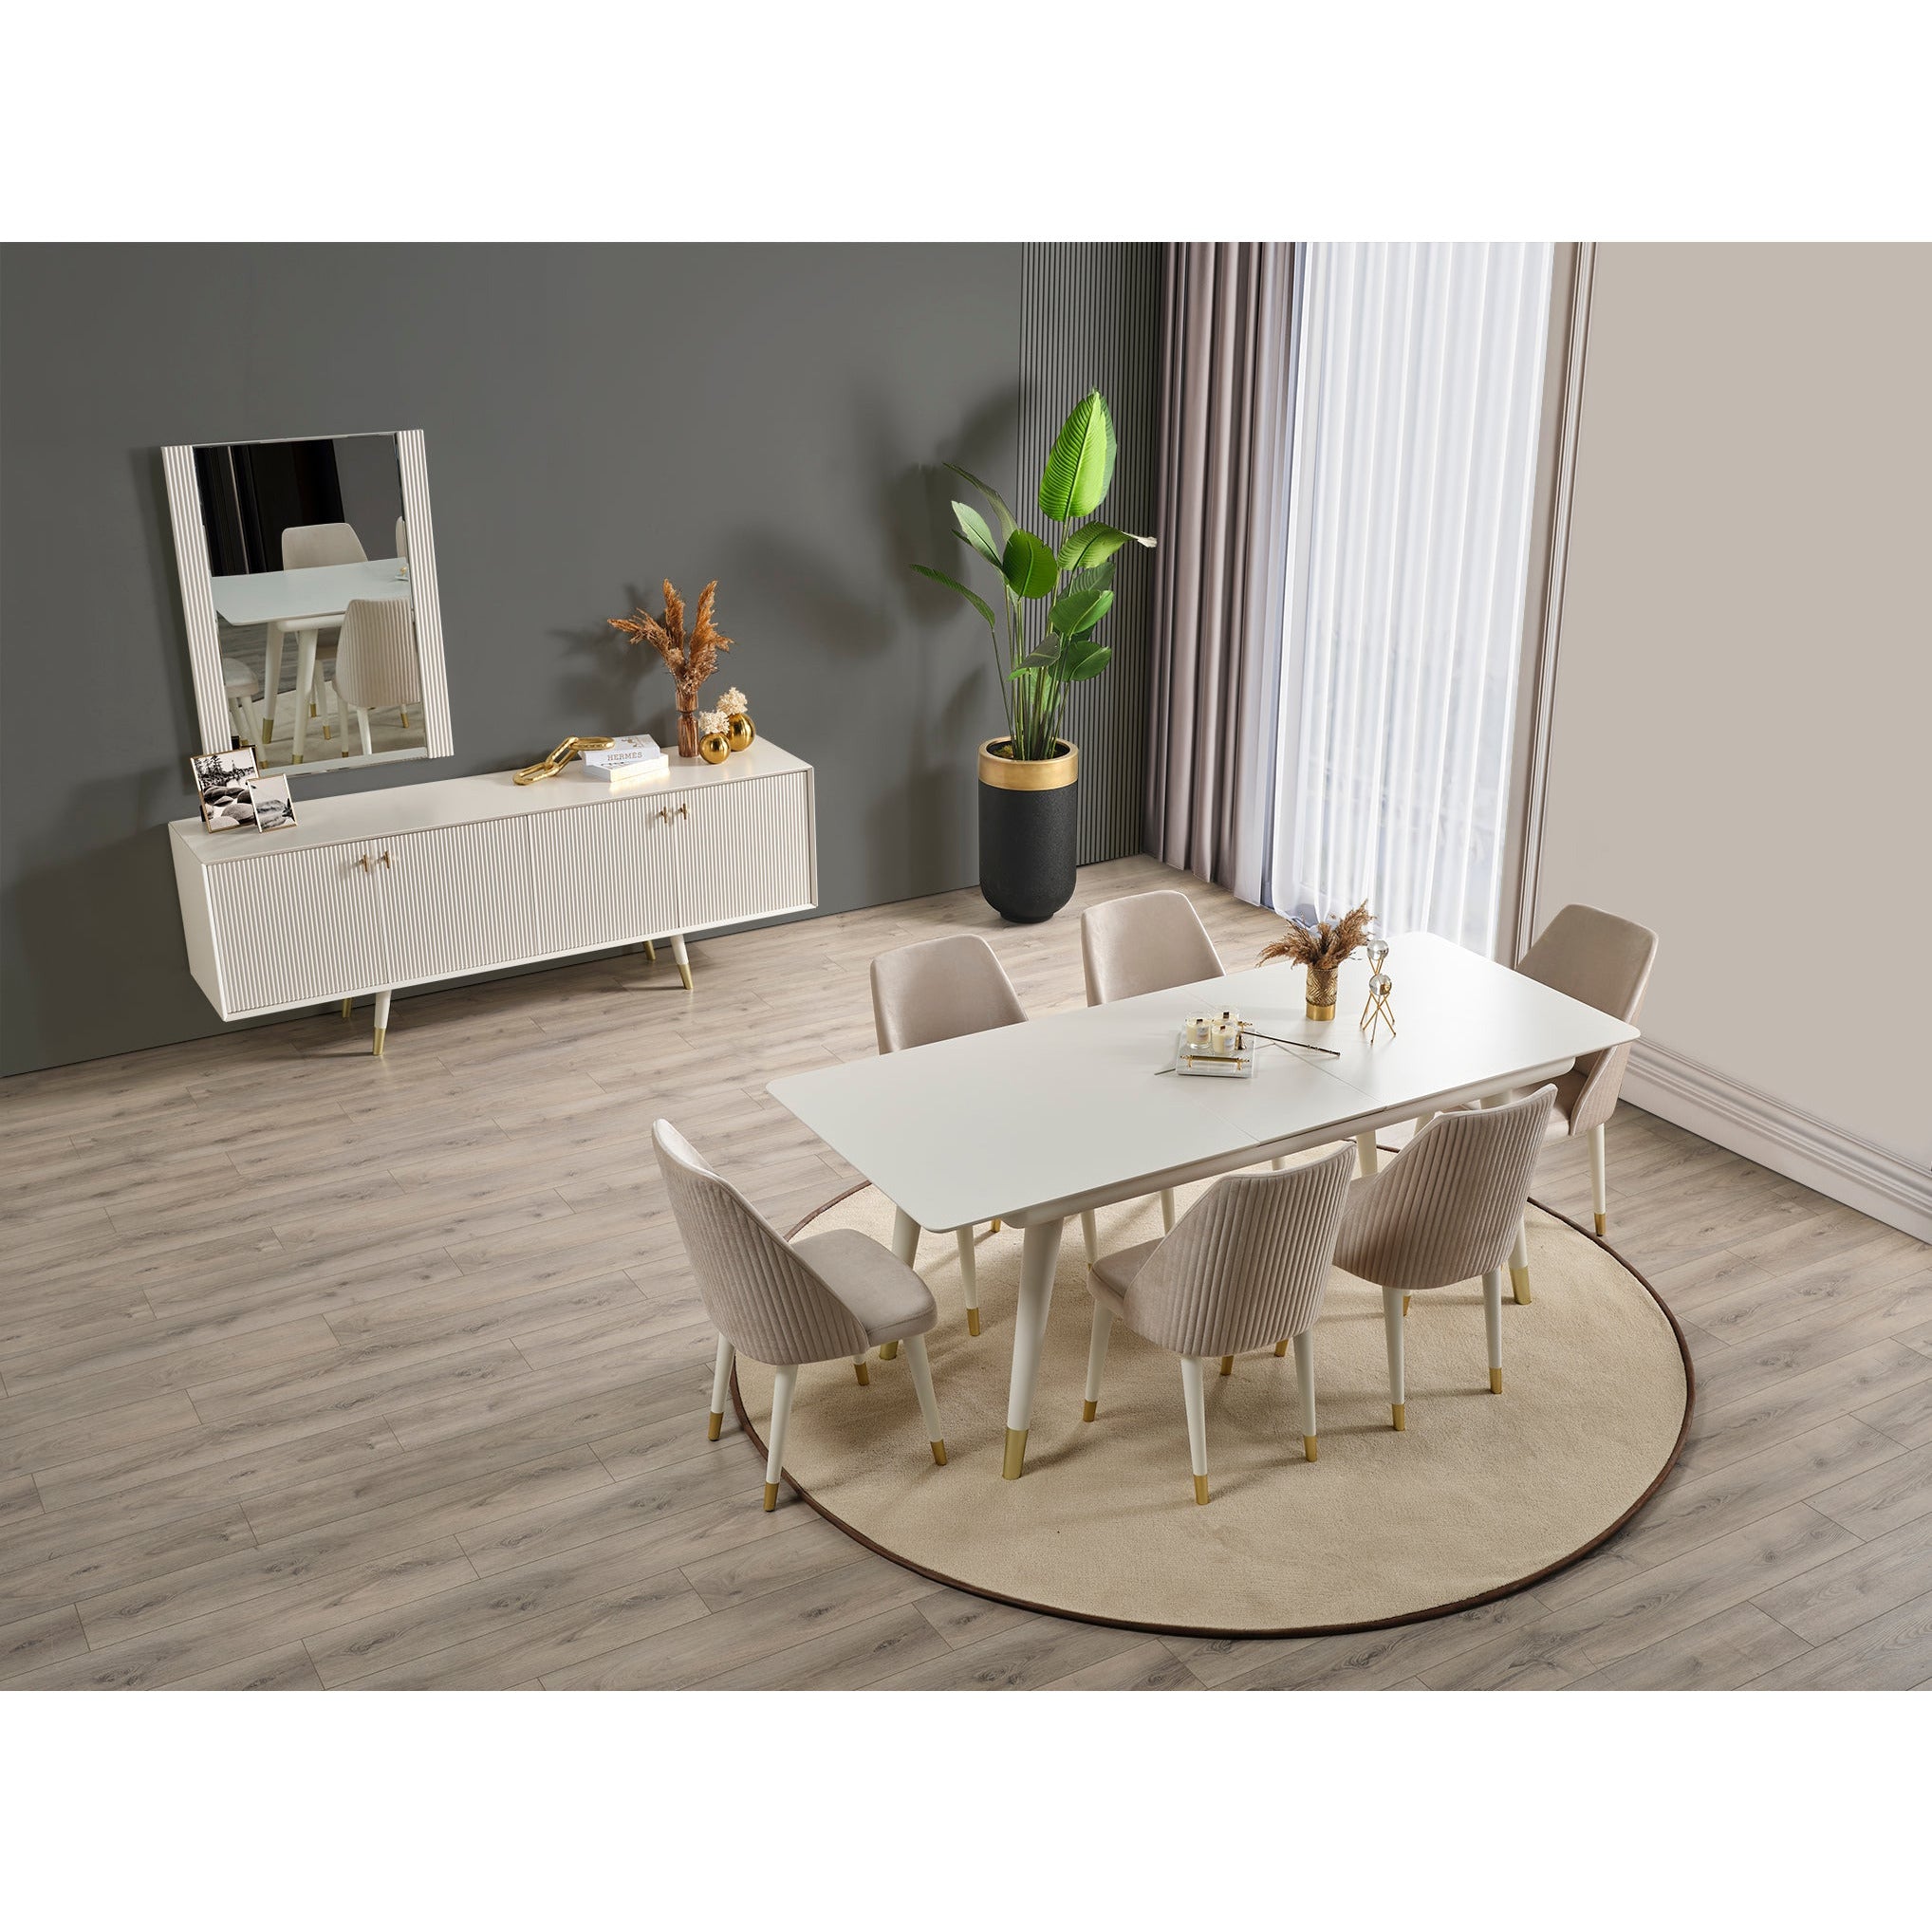 Asra Förlängningsbart Matbord - LINE Furniture Group